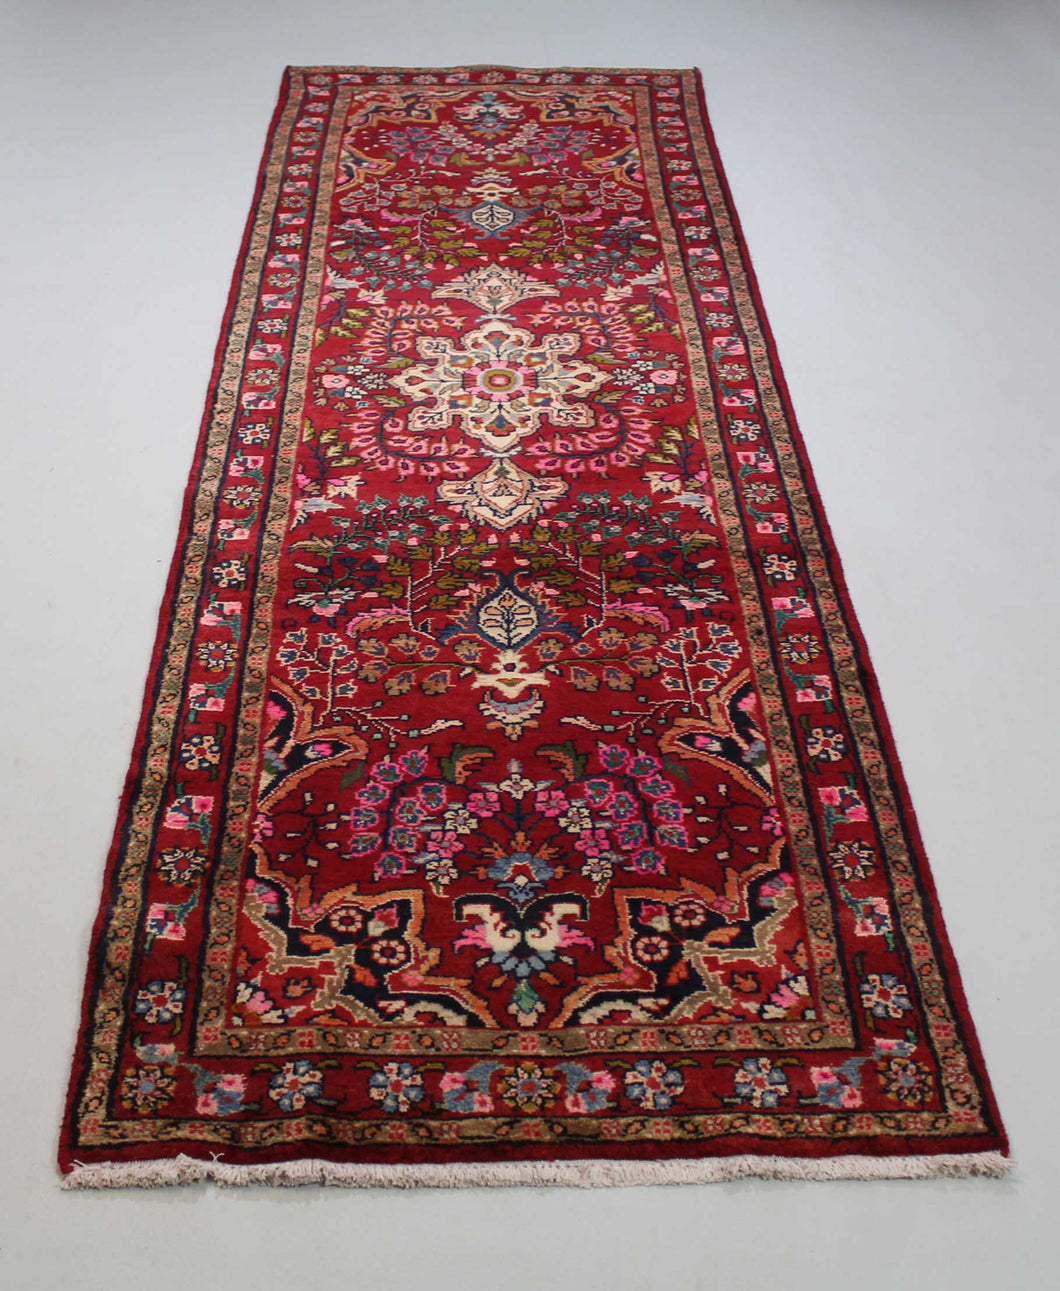 Handmade Antique, Vintage oriental wool Persian \Mosel rug - 318 X 92 cm